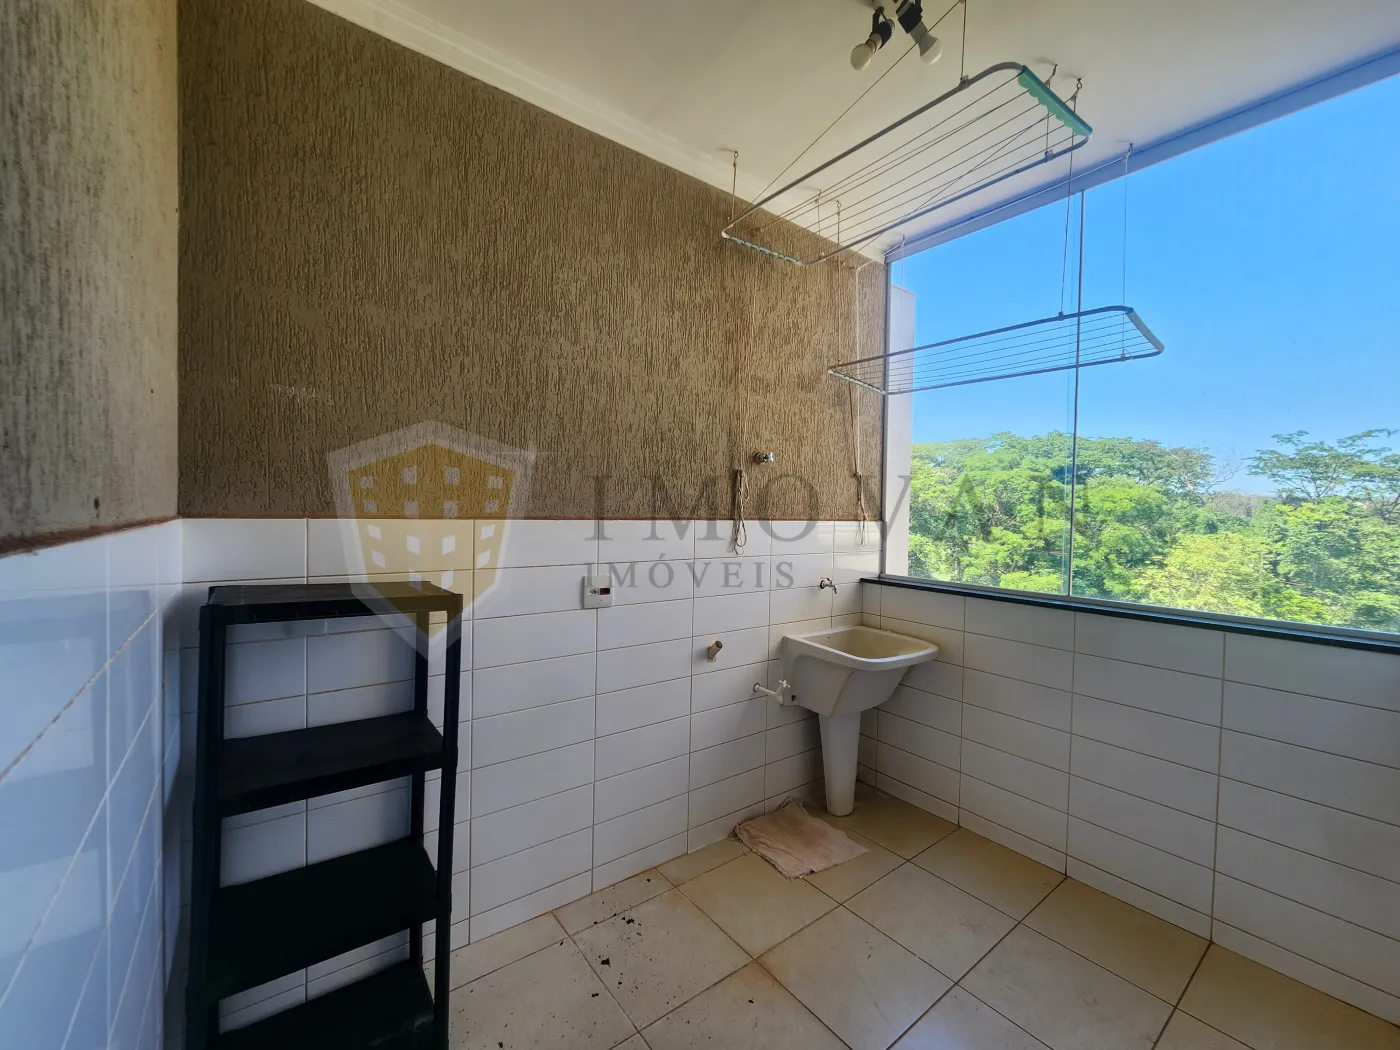 Alugar Apartamento / Padrão em Ribeirão Preto R$ 2.300,00 - Foto 18